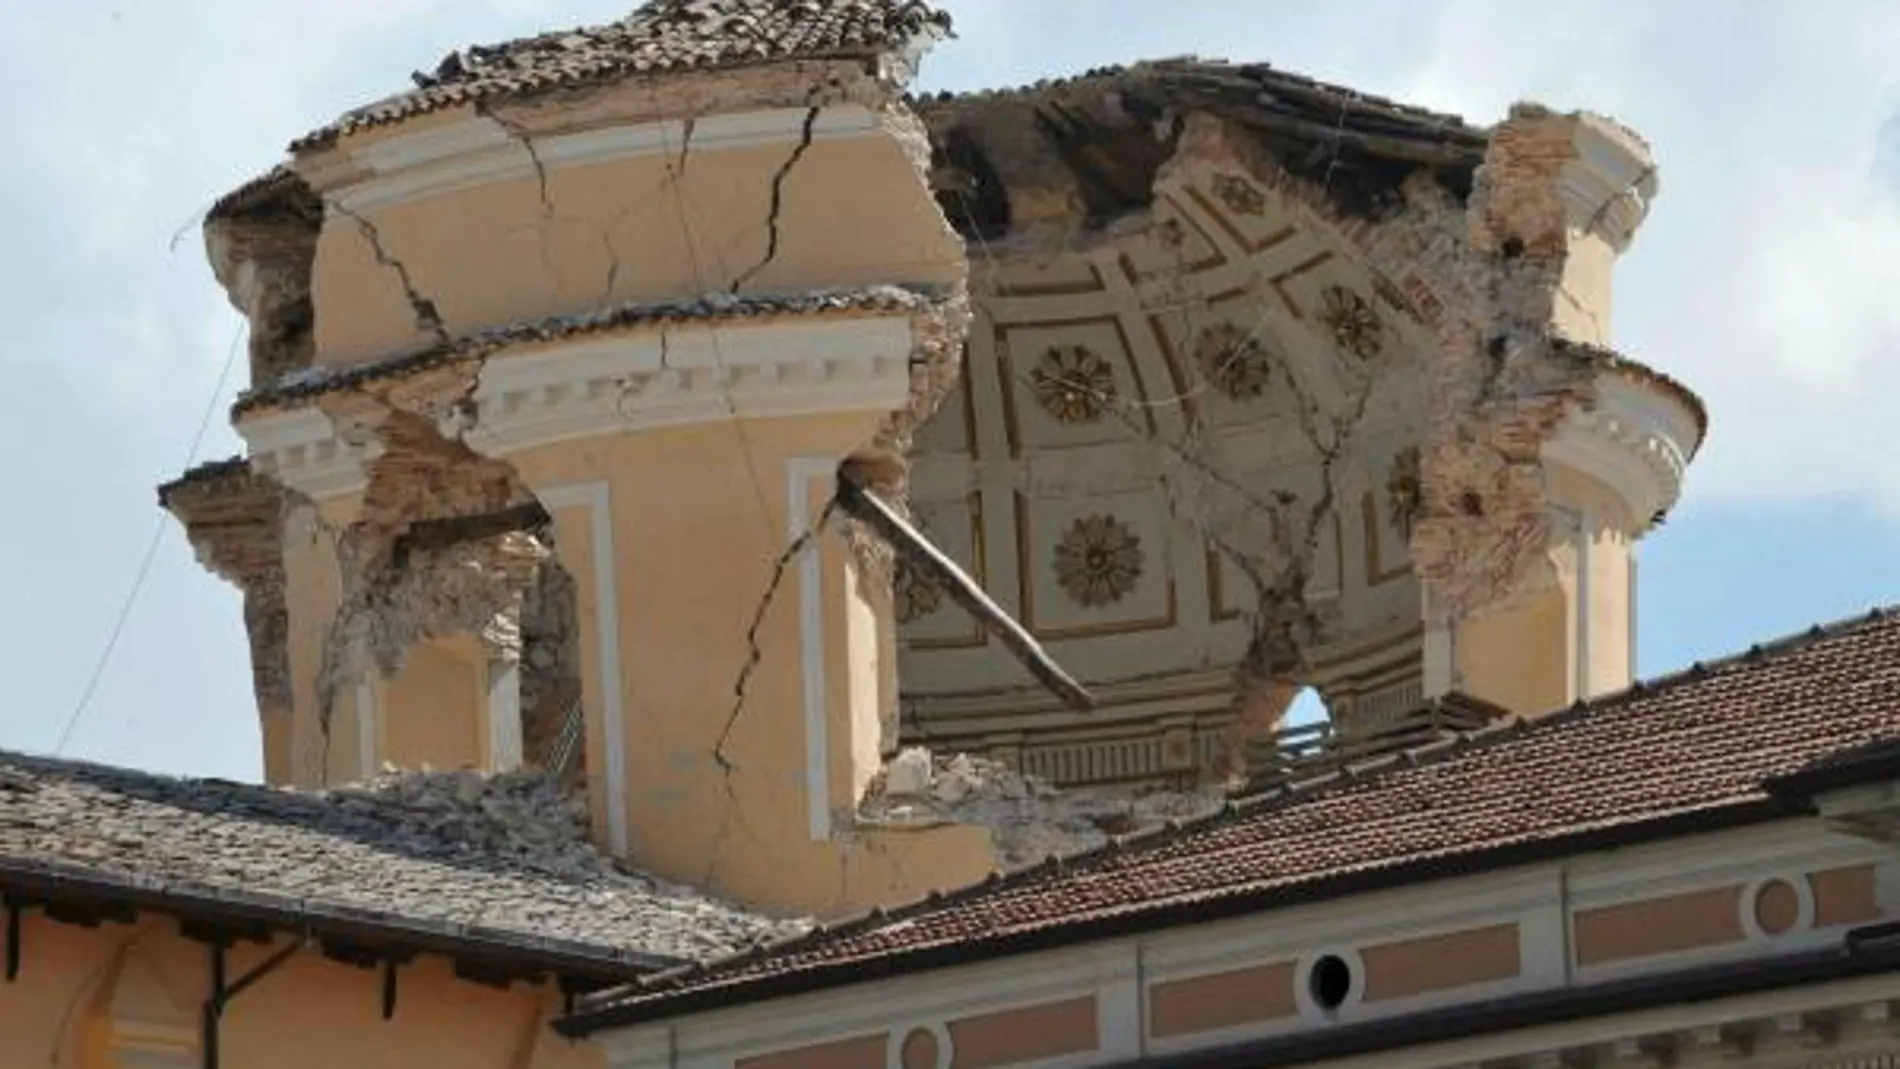 Muchas obras de arte afectadas por el terremoto, incluidas las Termas de Caracalla